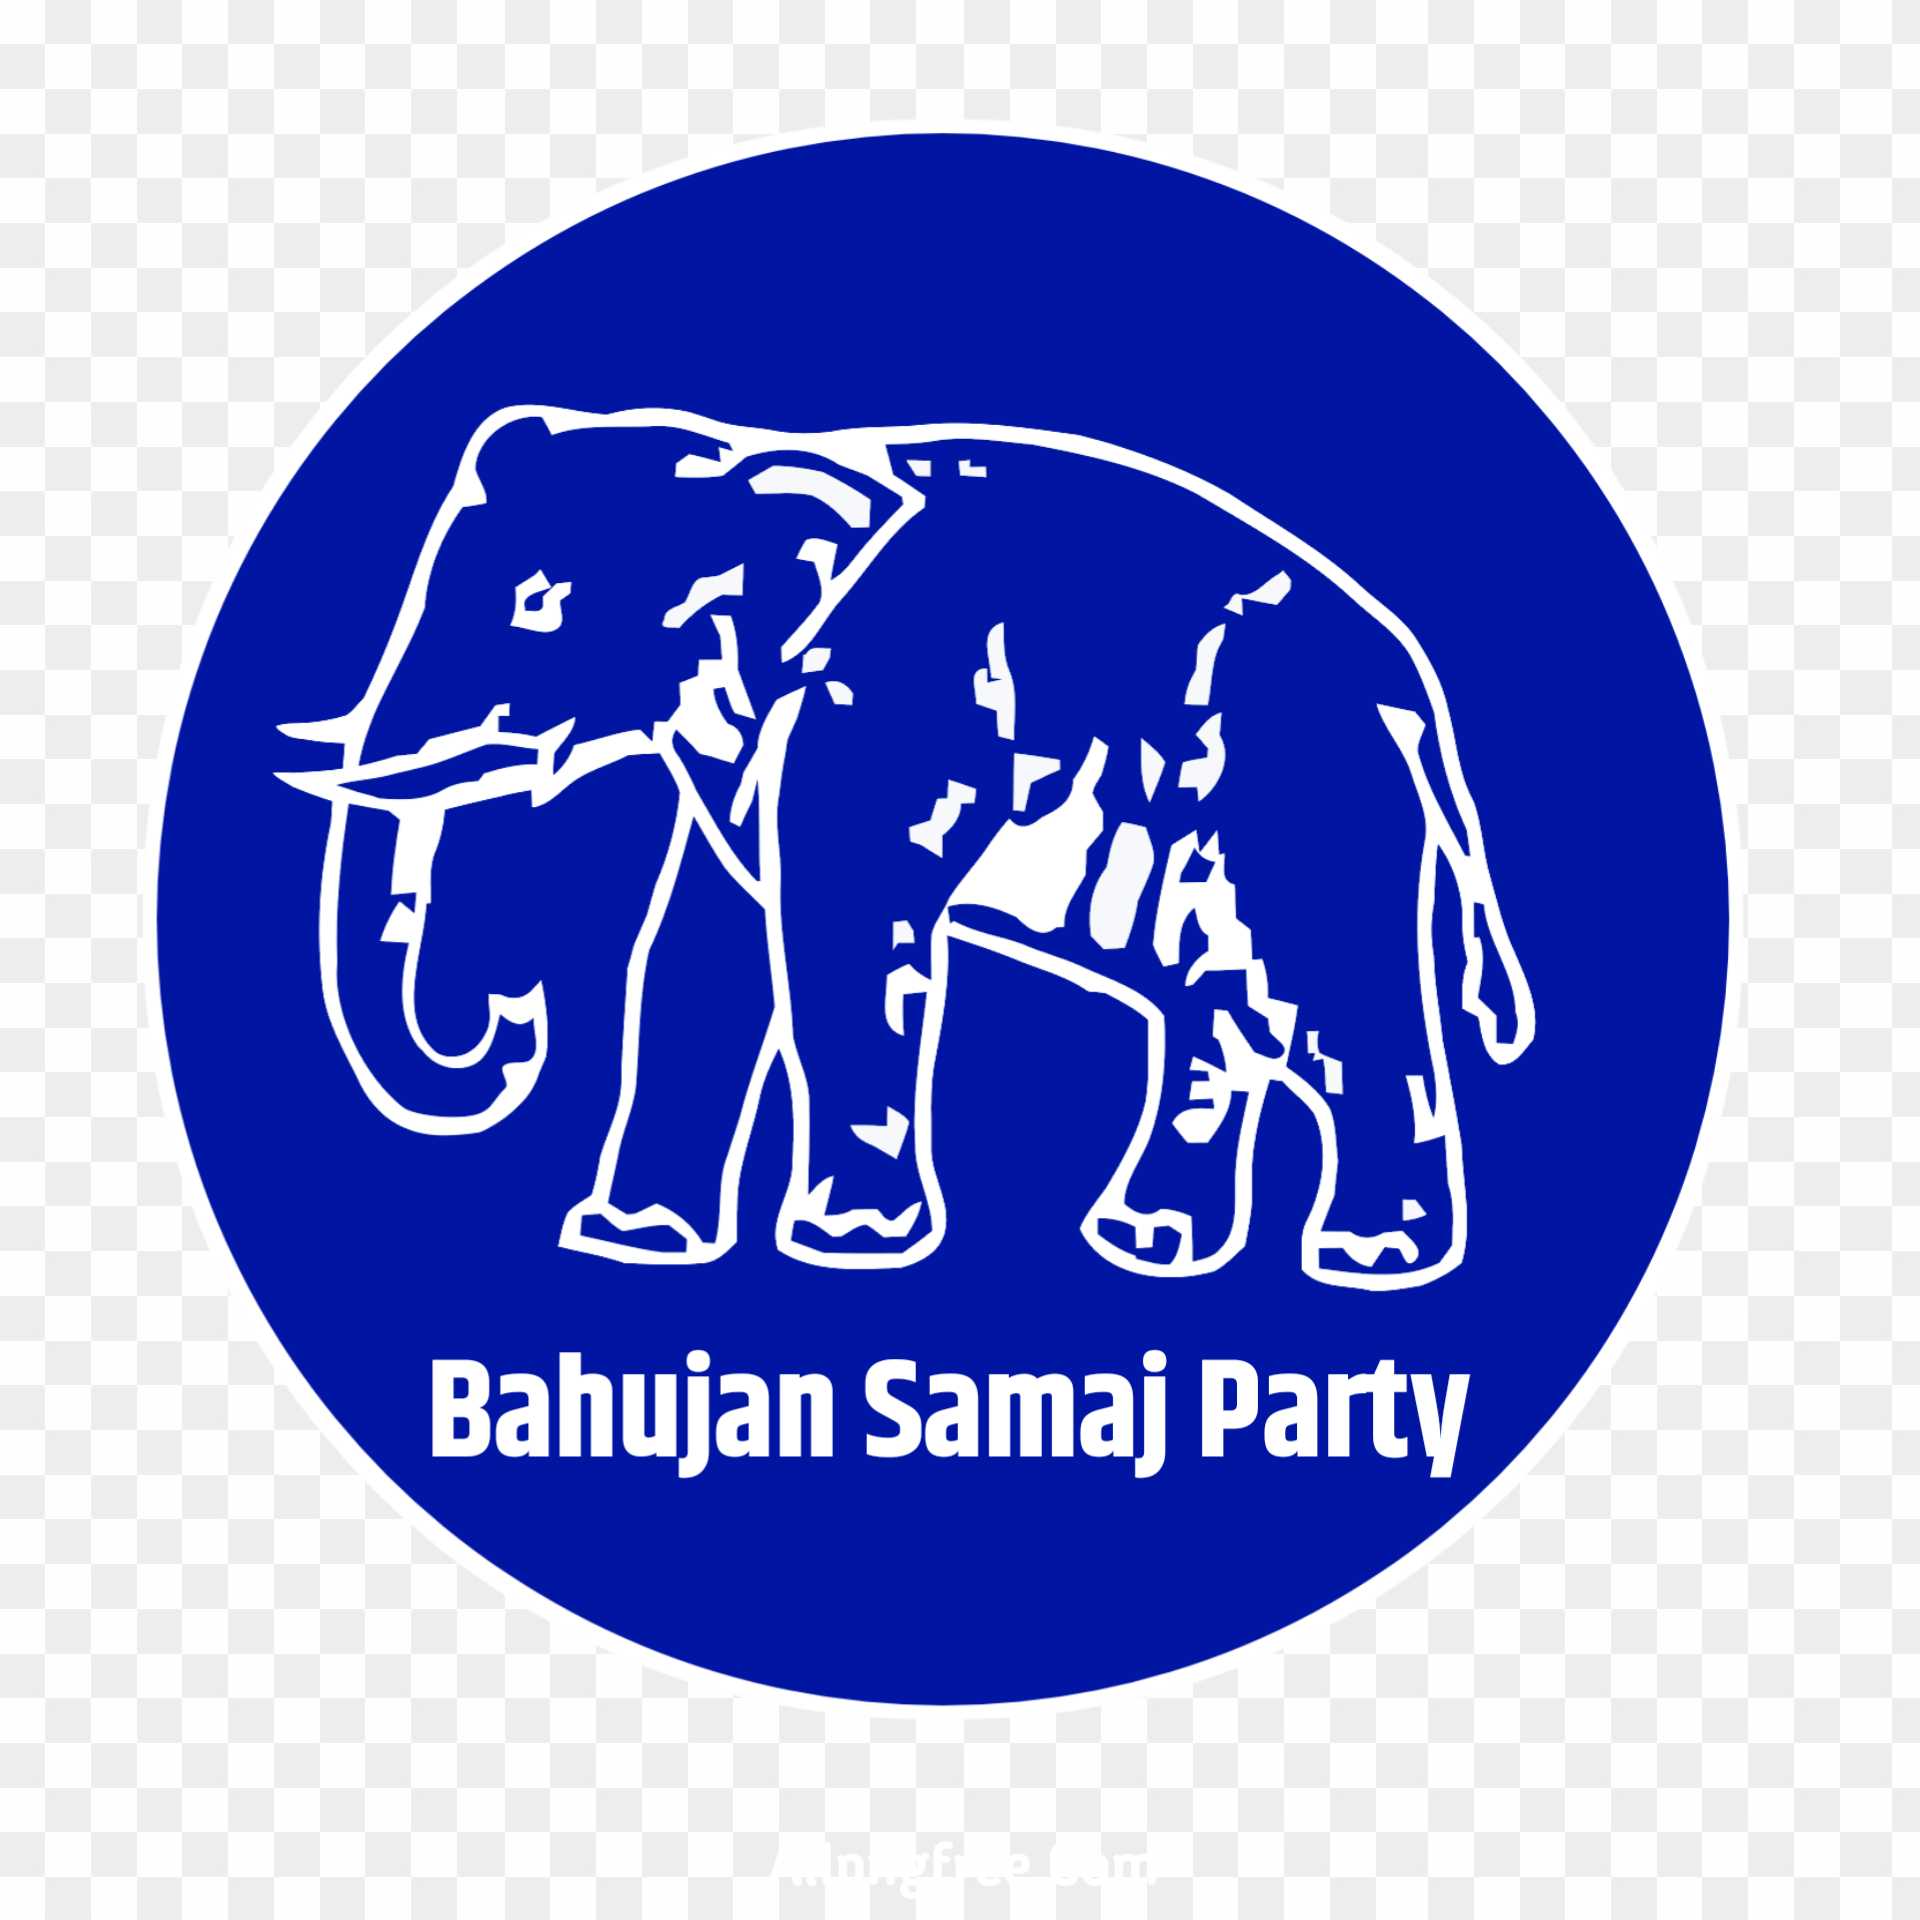 Bahujan Samaj Party logo png images 